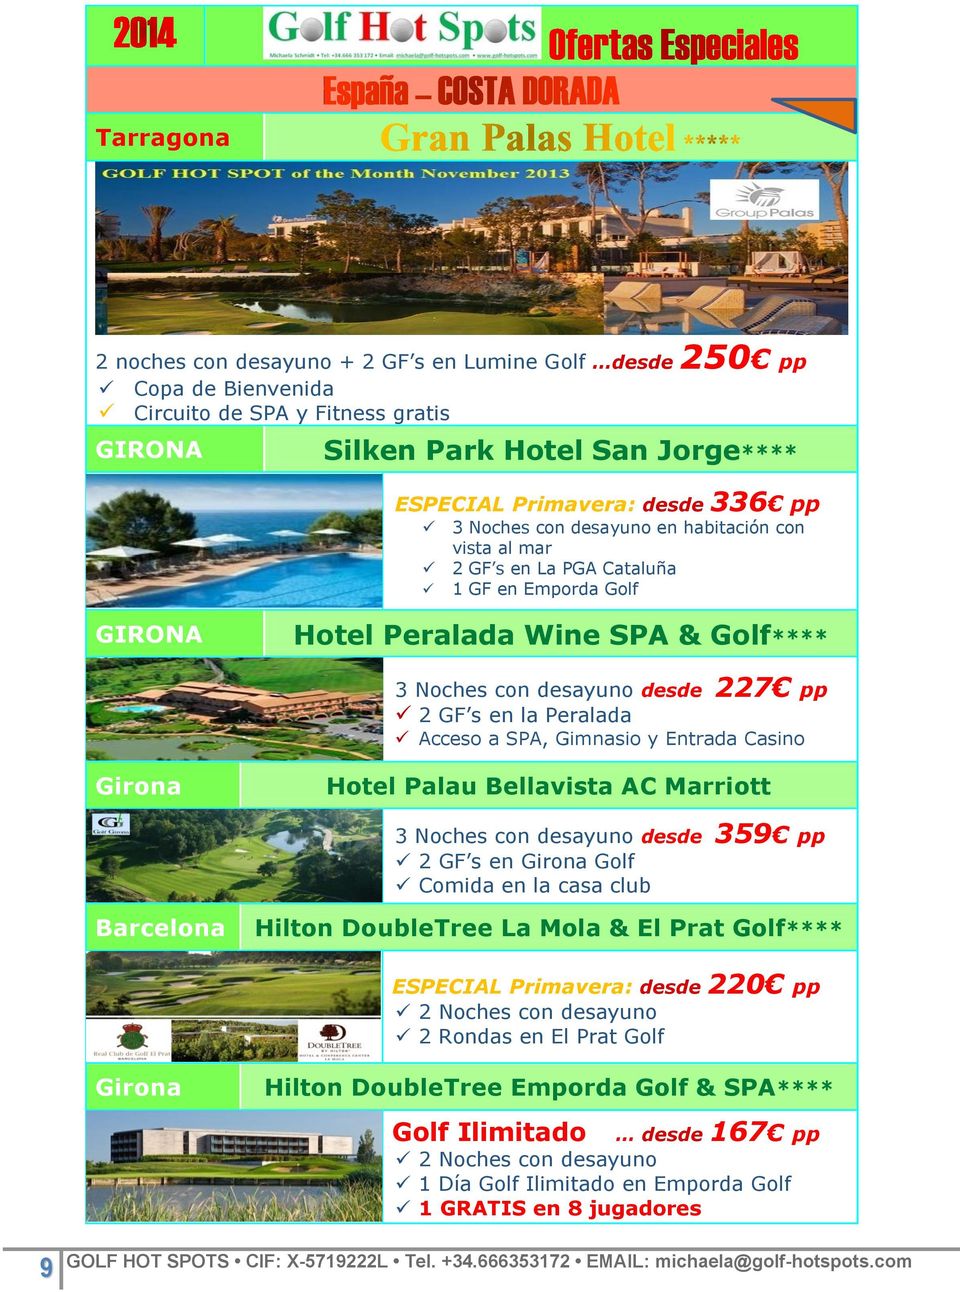 Acceso a SPA, Gimnasio y Entrada Casino Girona Hotel Palau Bellavista AC Marriott 3 Noches con desayuno desde 359 pp 2 GF s en Girona Golf Comida en la casa club Barcelona Hilton DoubleTree La Mola &